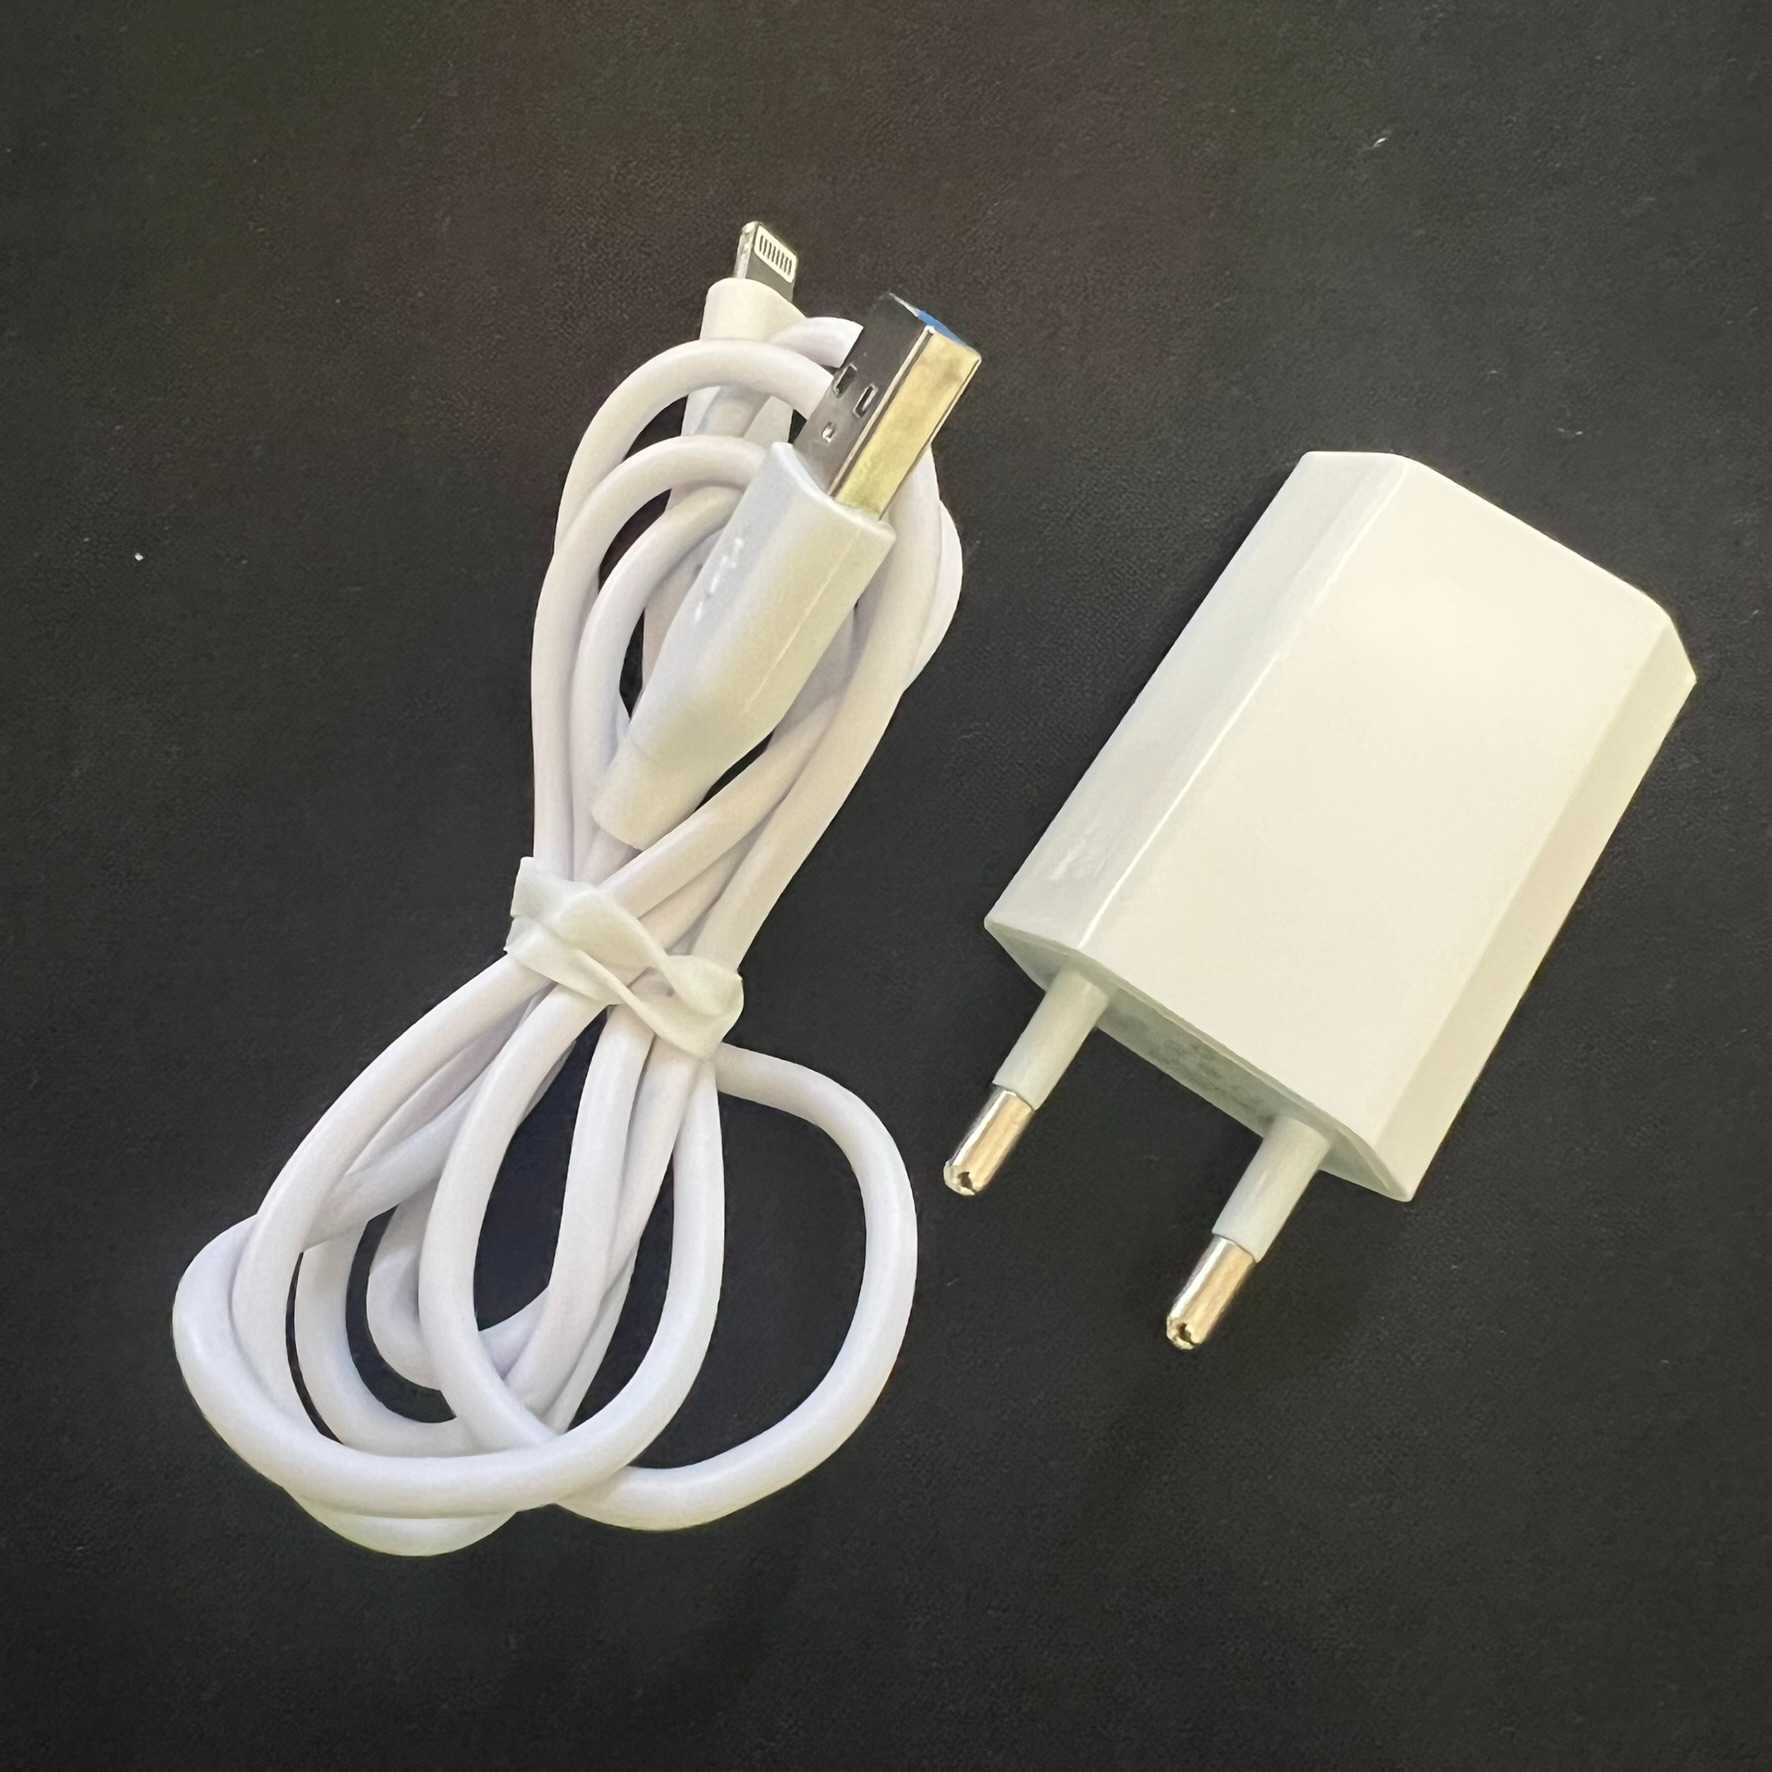 Carregador USB-A e cabo Lighting para iPhone (compatíveis)